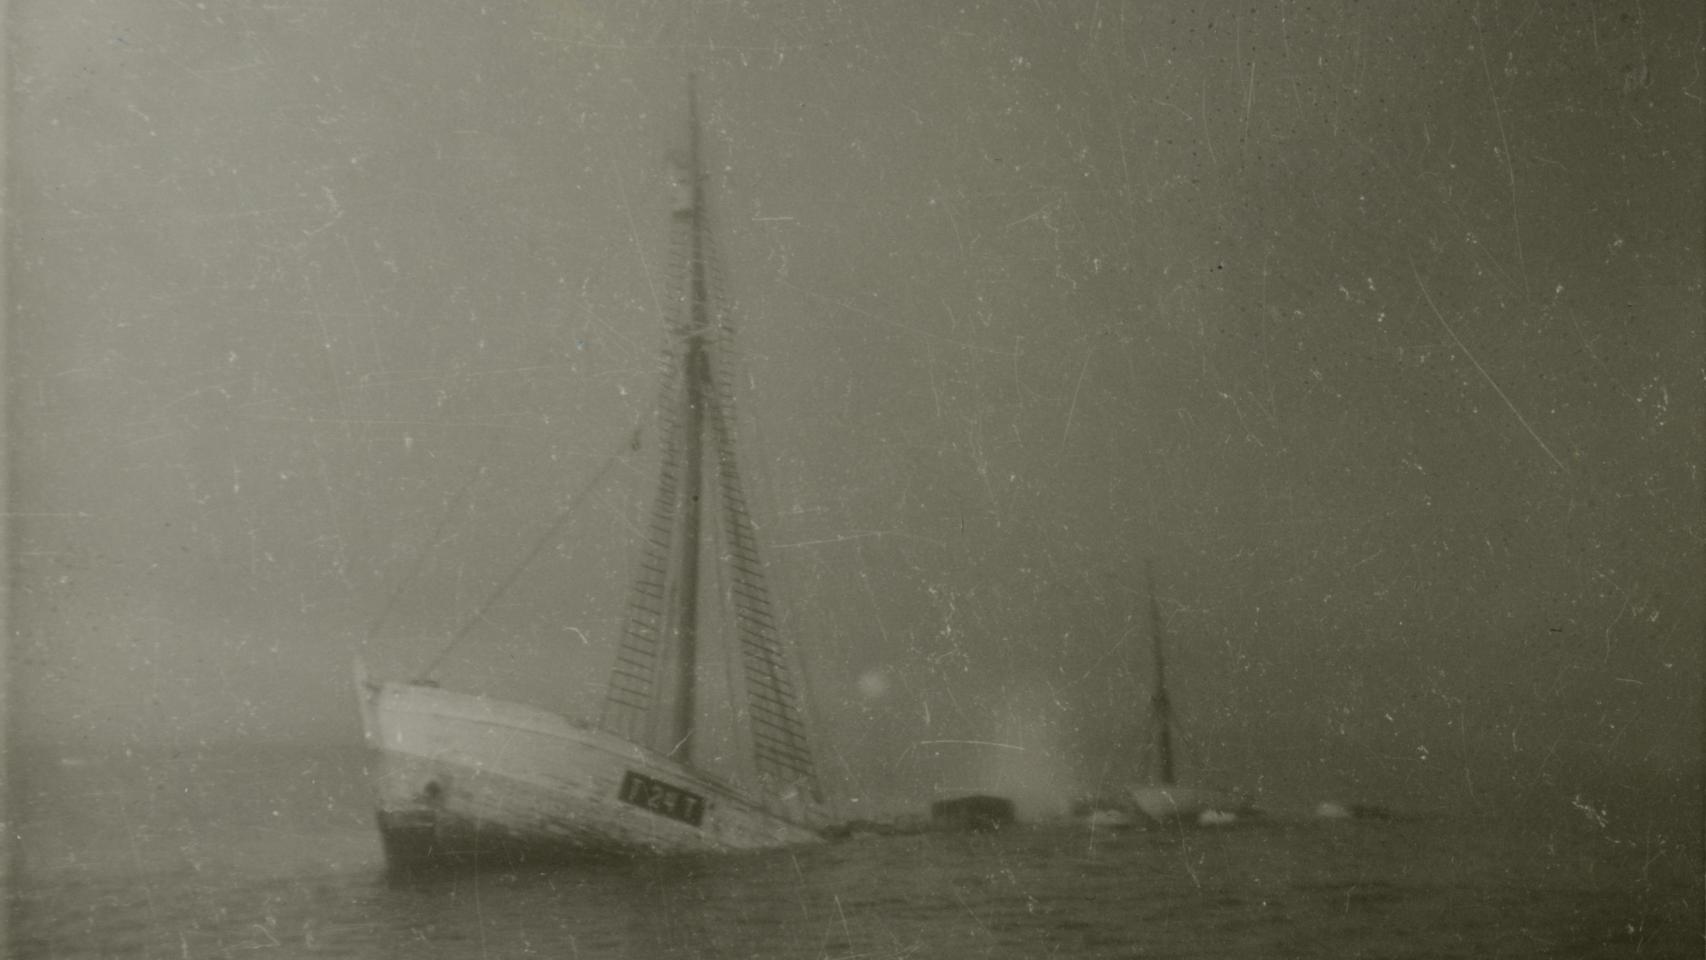 Naufragio del 'Quest' en 1962 frente a las costas de Terranova.